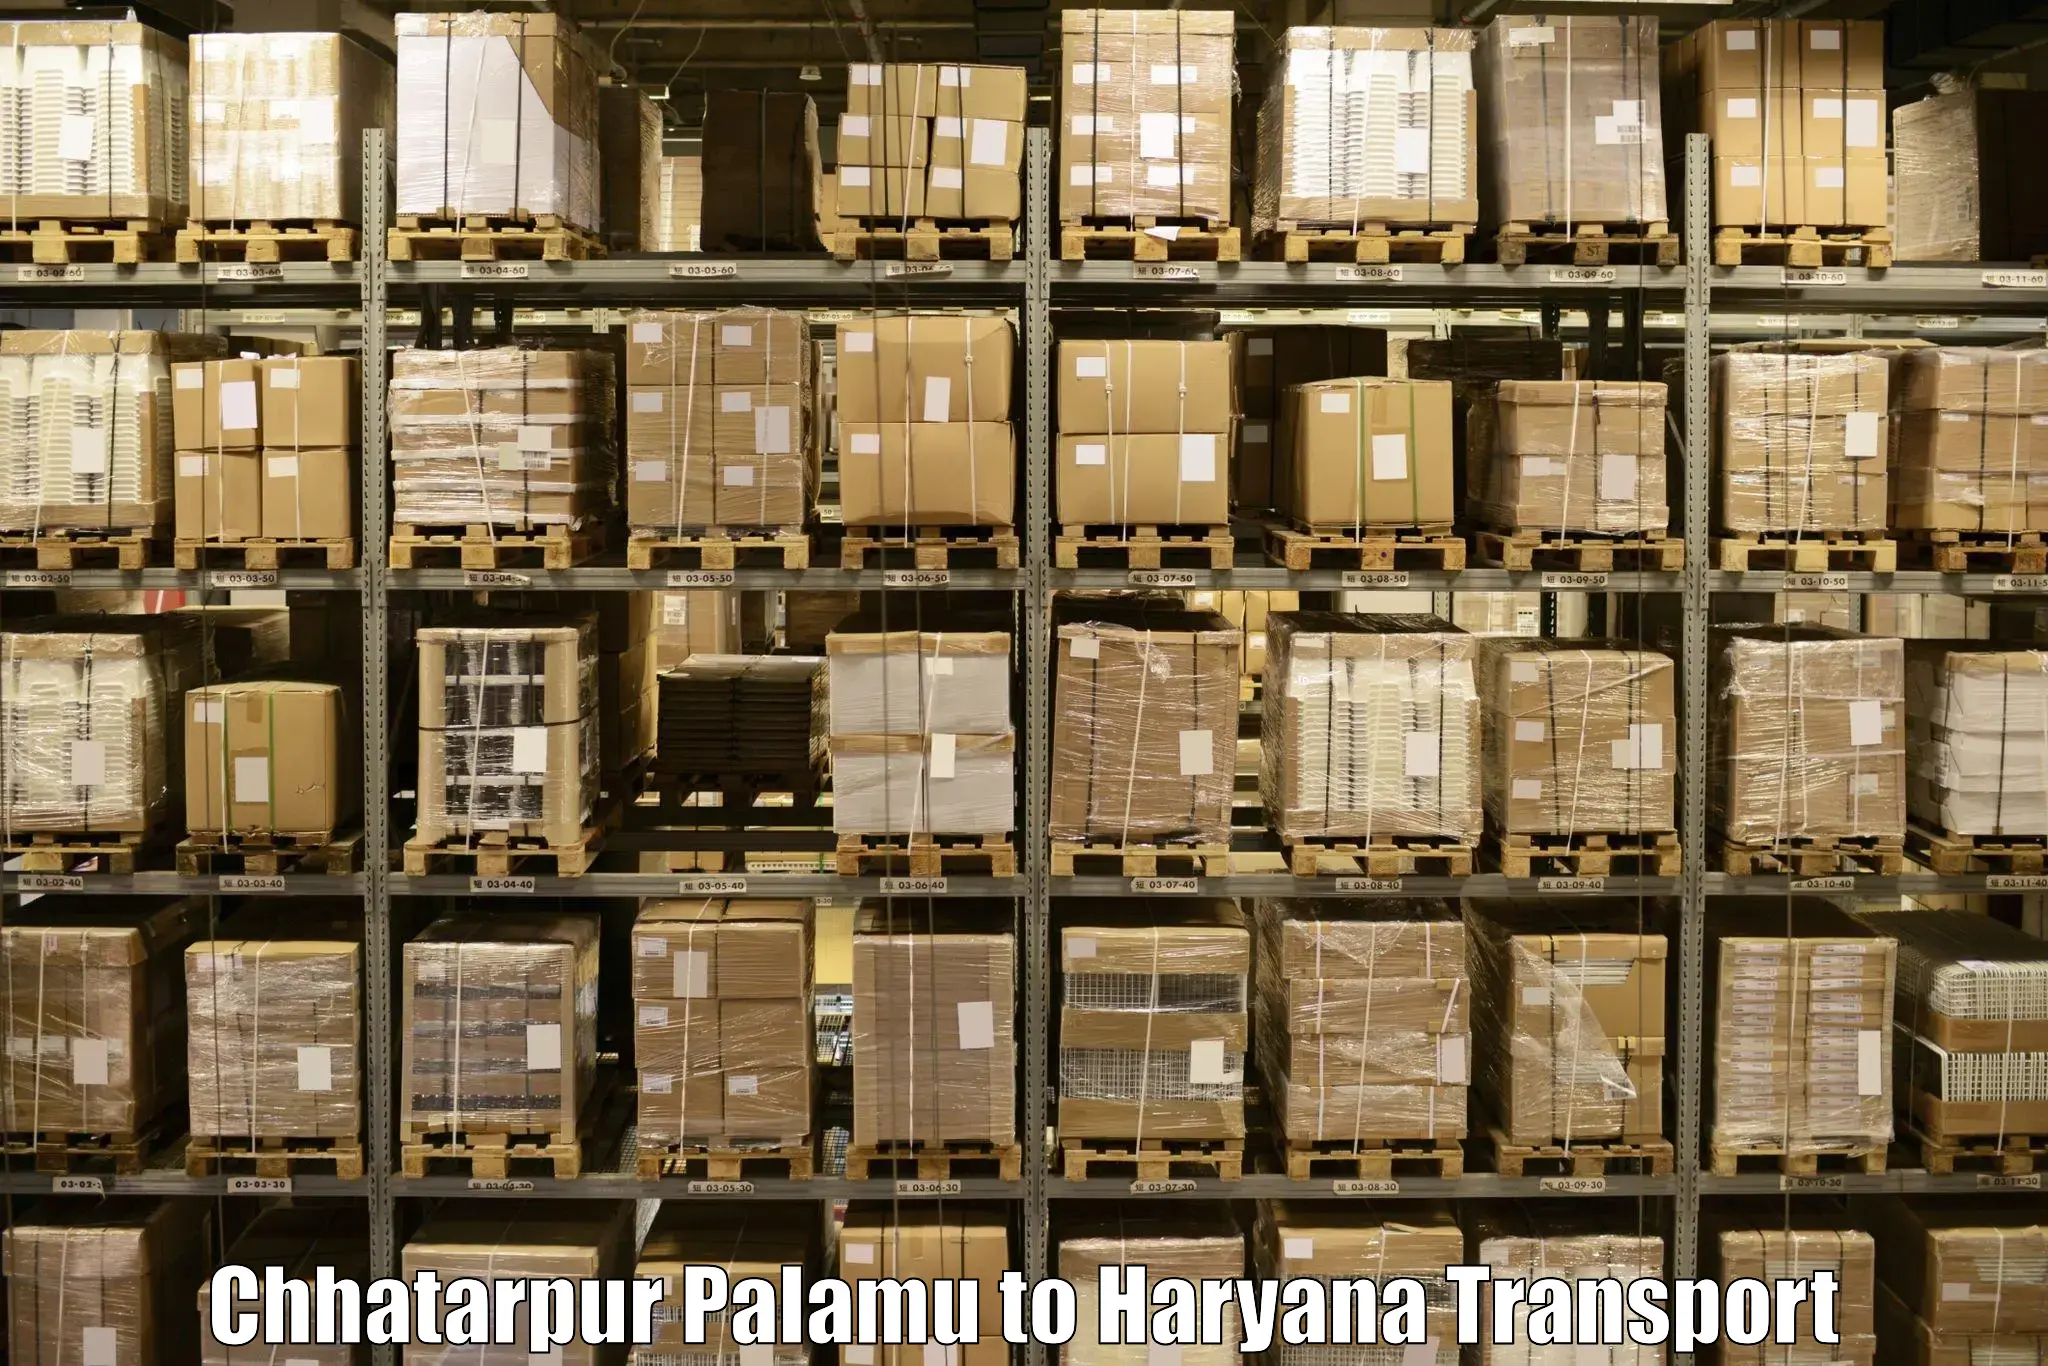 Shipping partner Chhatarpur Palamu to Sonipat